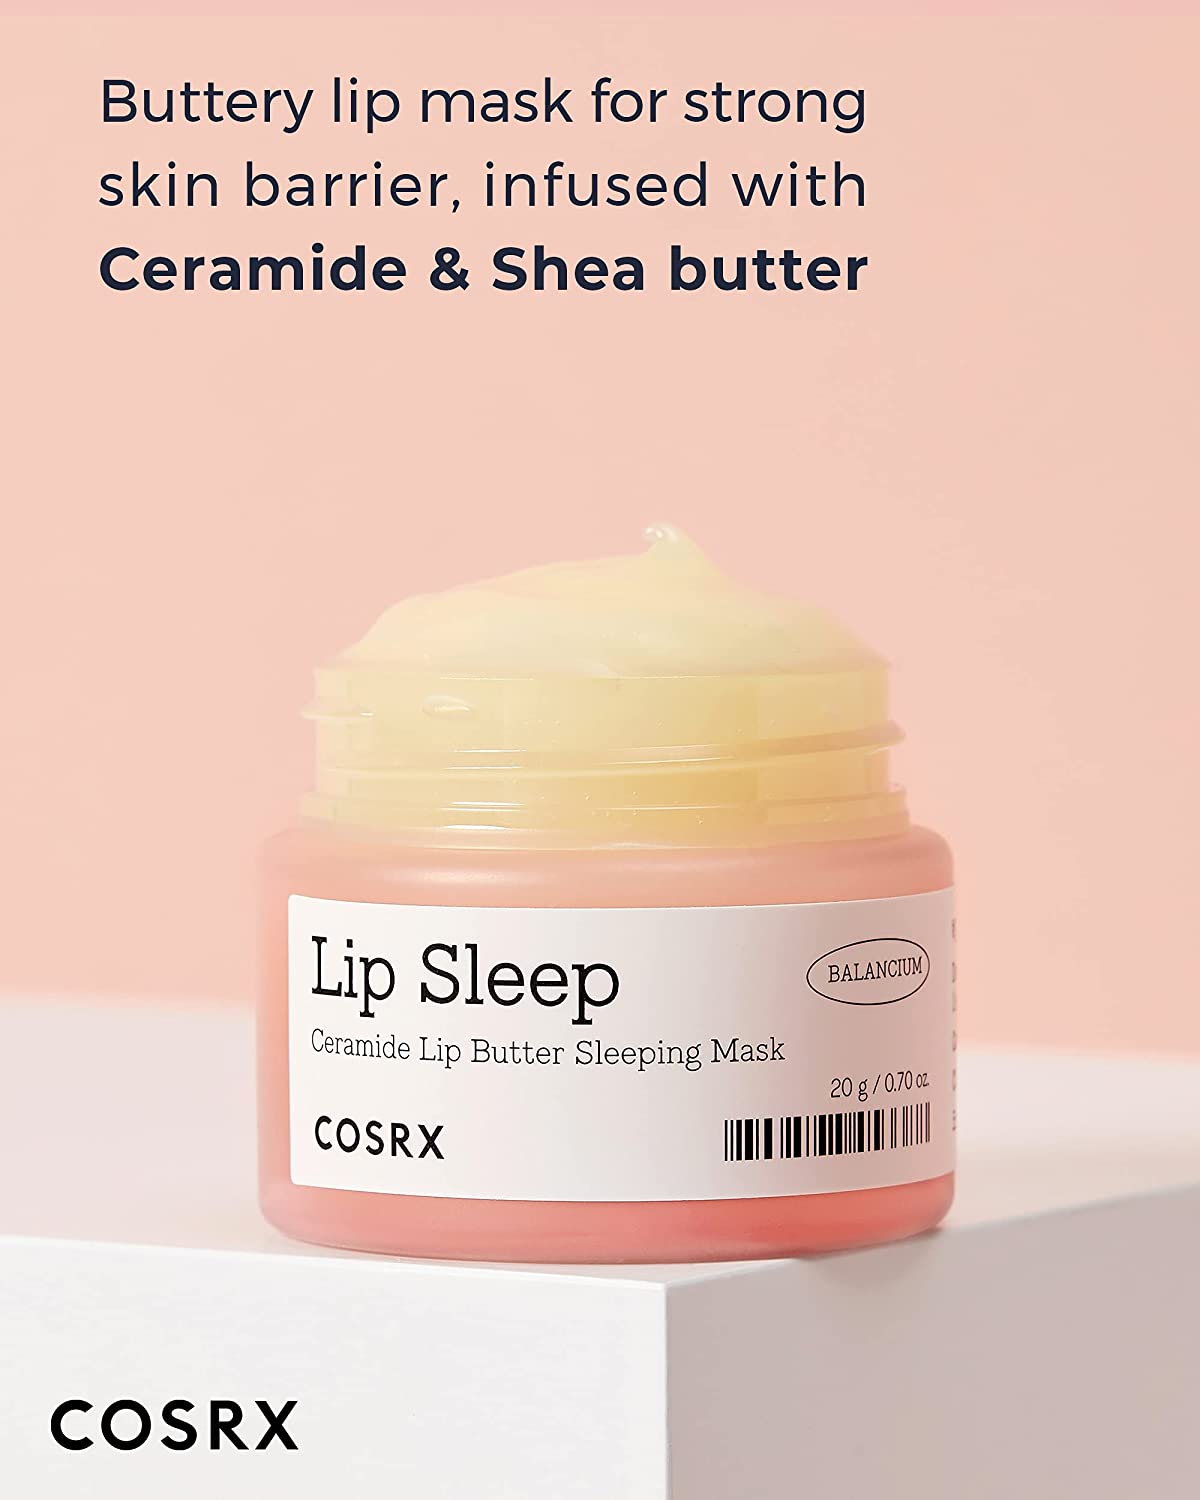 Cosrx Balancium Ceramide Lip Butter Sleeping Mask - Masque de nuit réparateur pour les lèvres